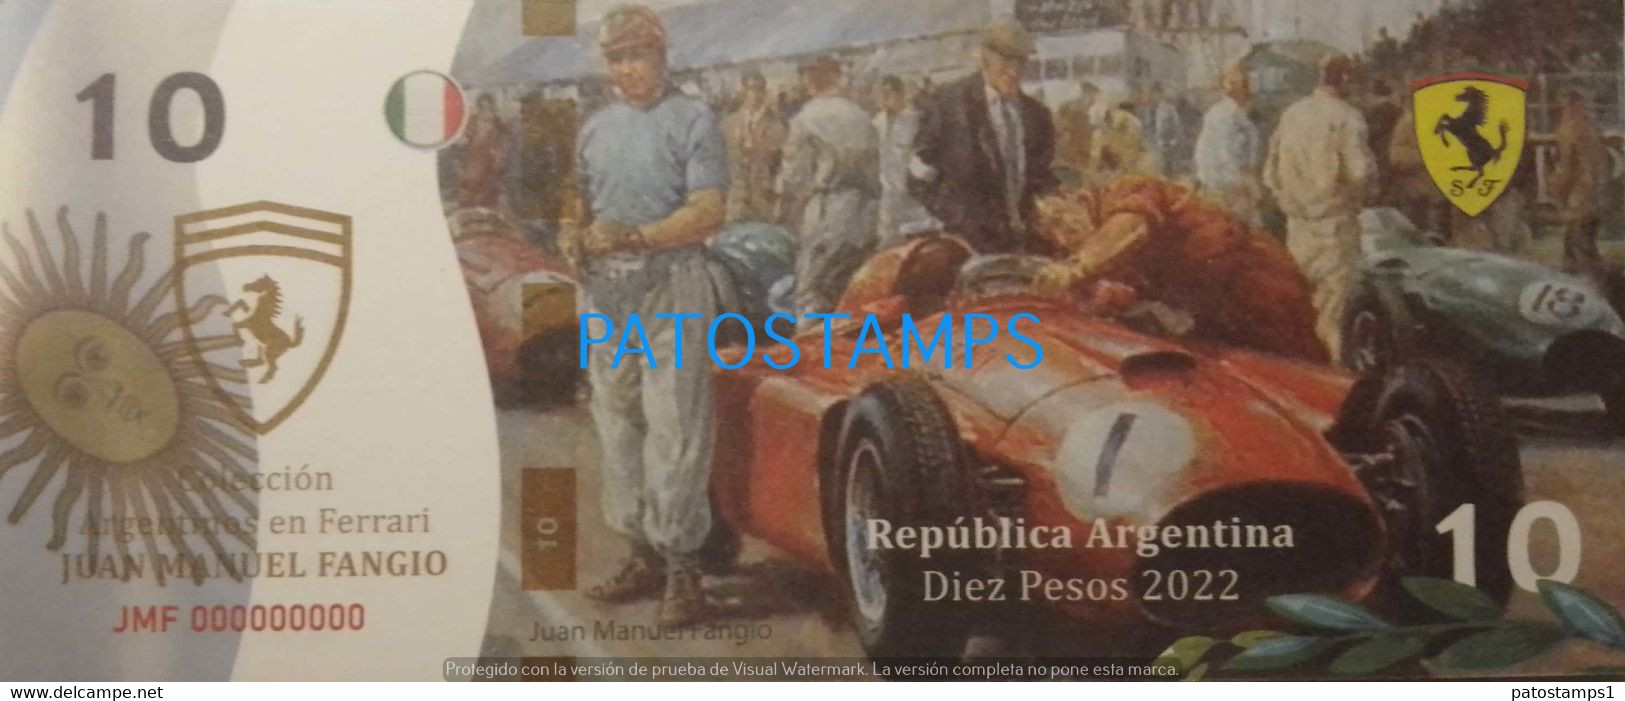 192534 BILLETE FANTASY TICKET 10 BANK ARGENTINA AUTOMOVILISMO CAR FERRARI RUNNER JUAN MANUEL FANGIO NO POSTCARD - Kilowaar - Bankbiljetten